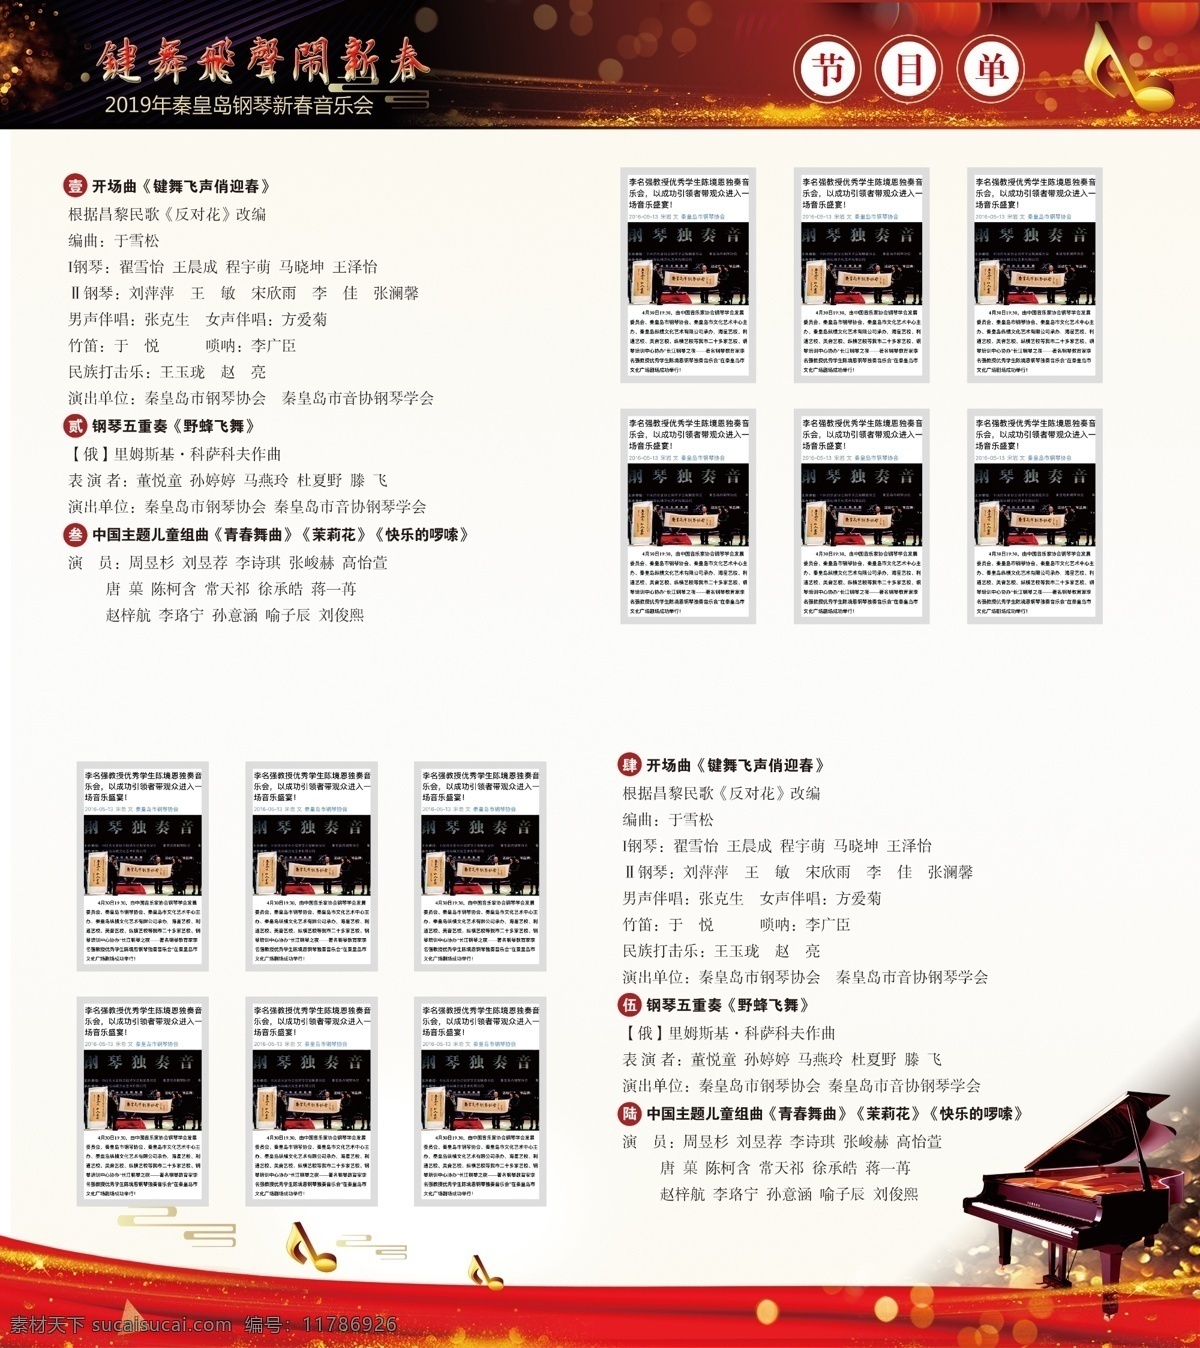 音乐会 节目单 正 钢琴 新春 横版节目单 2019 新春节目单 名片卡片